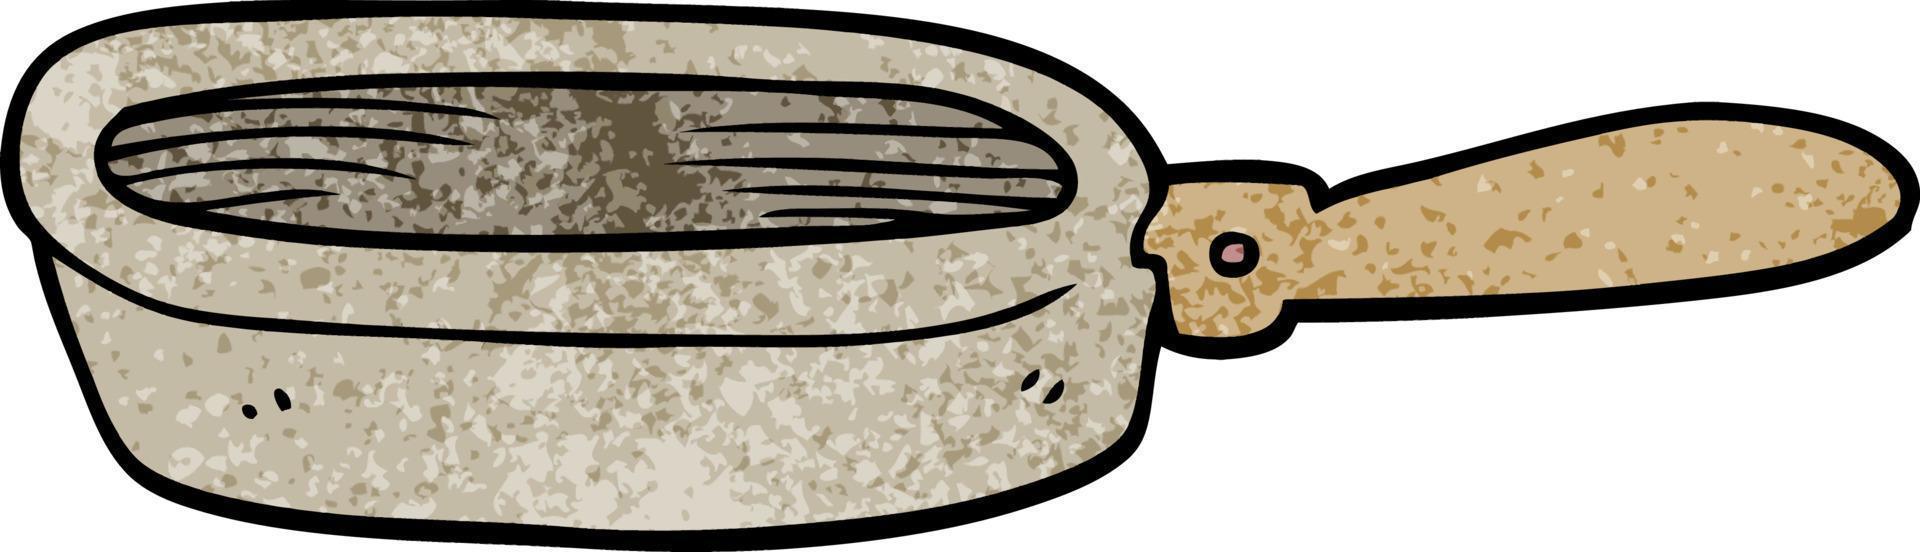 doodle de dessin animé d'une poêle à frire vecteur